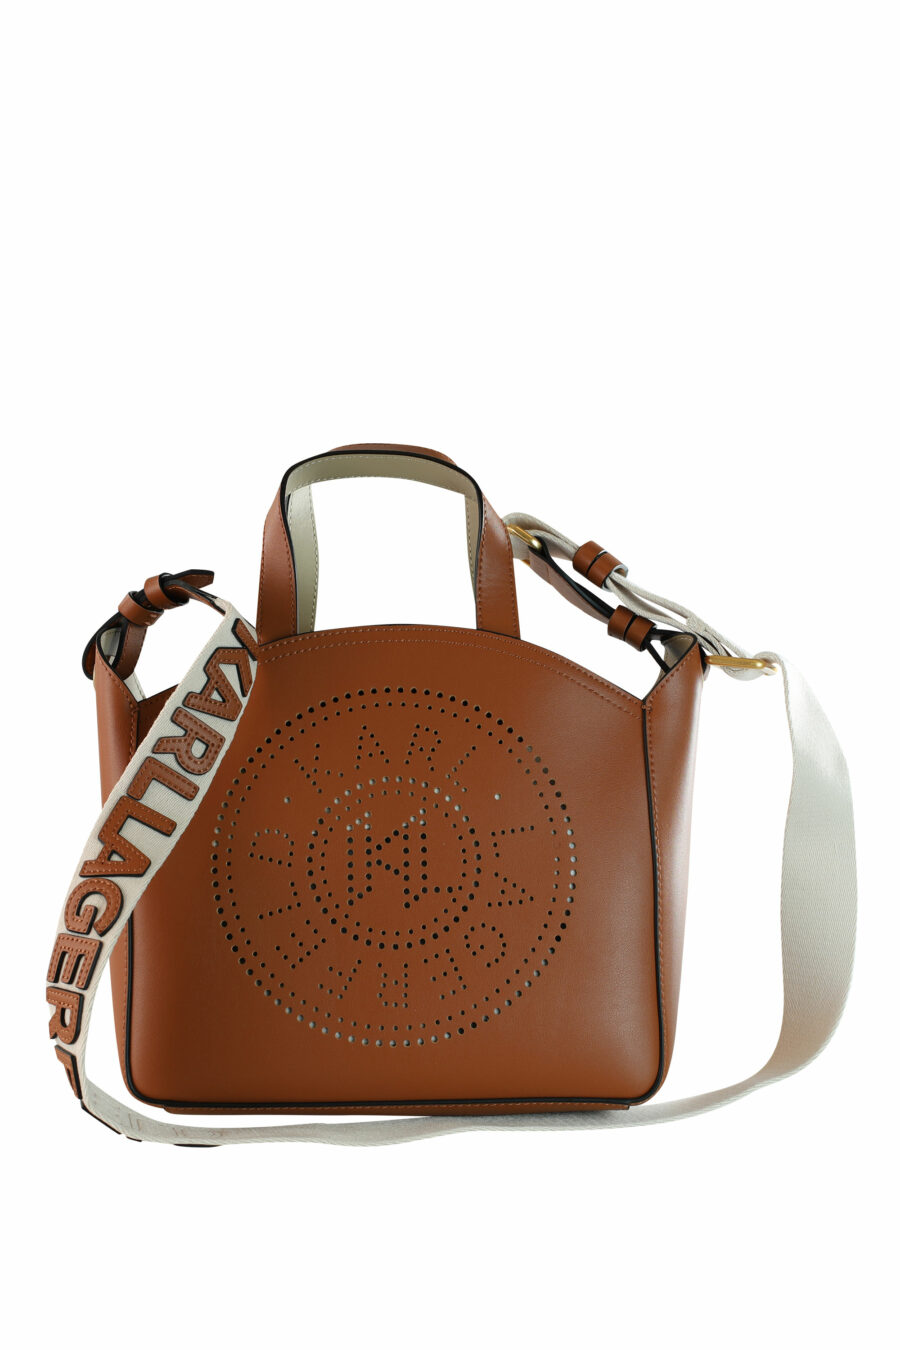 Tote bag marrón con logo "k/circle" monocromático - 8720744234708 4